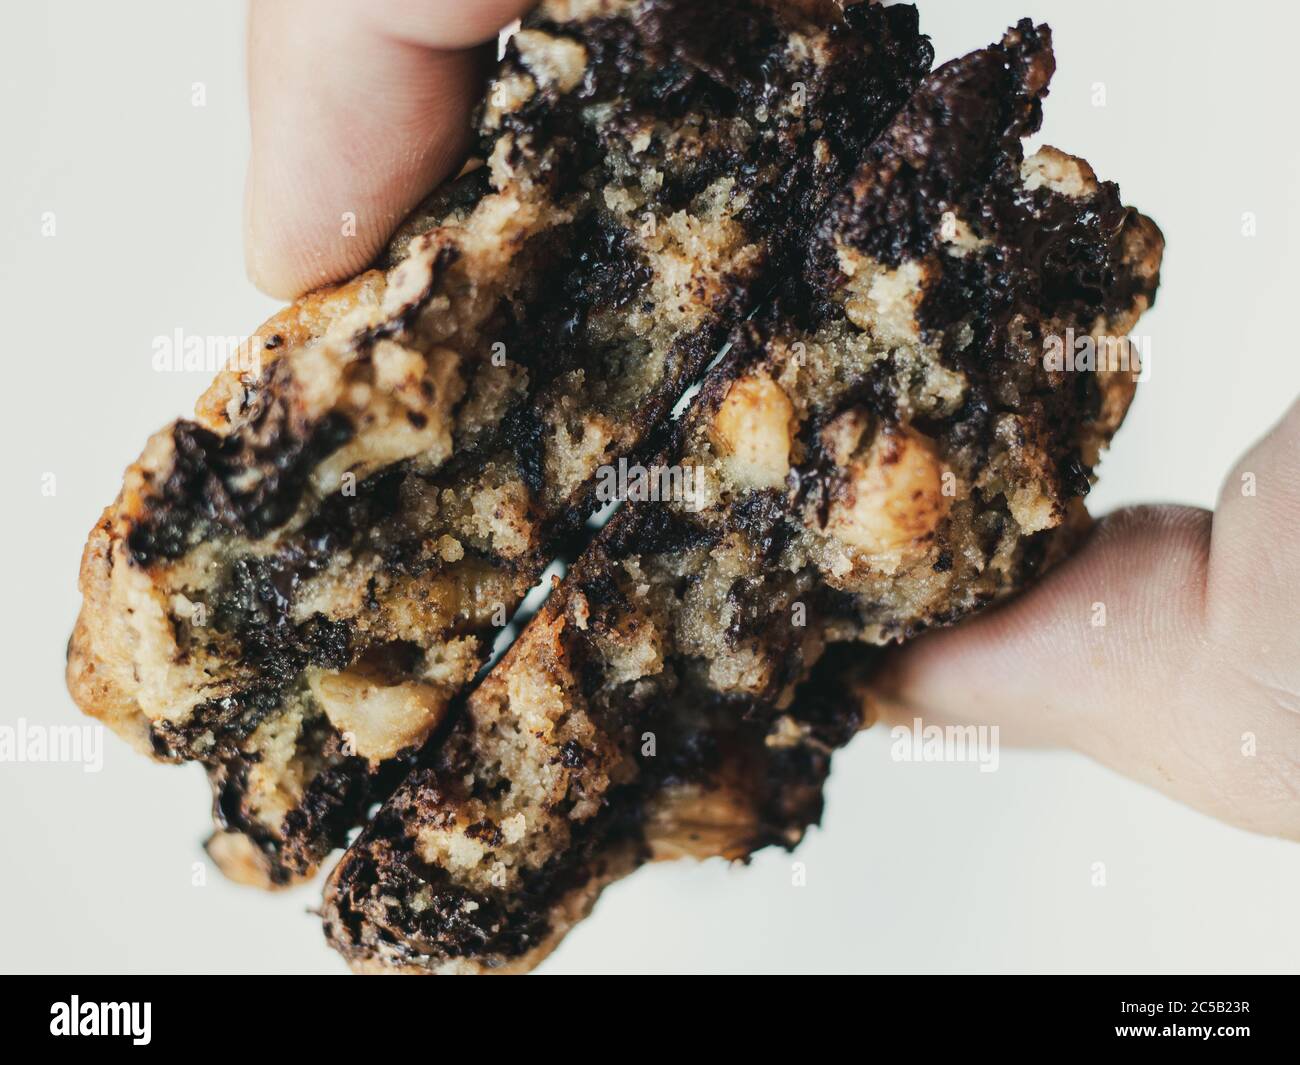 Primo piano dell'interno di due biscotti di farinata d'avena al cioccolato fondente tenuto dalle dita su uno sfondo bianco Foto Stock